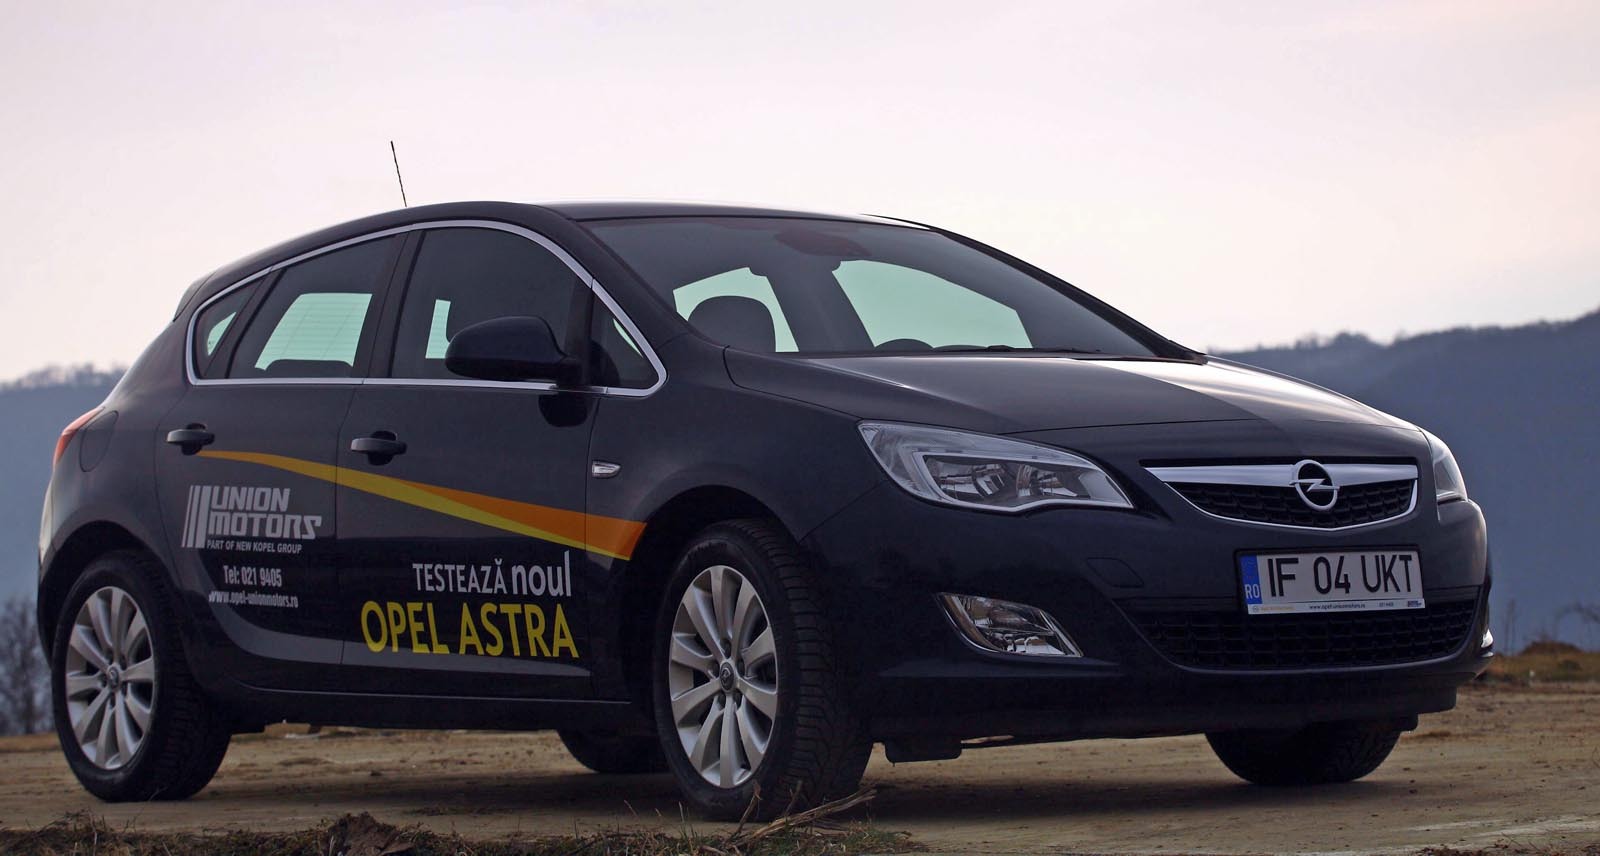 Opel Astra are un design echilibrat si fluid, parand o creatie a designerilor... francezi